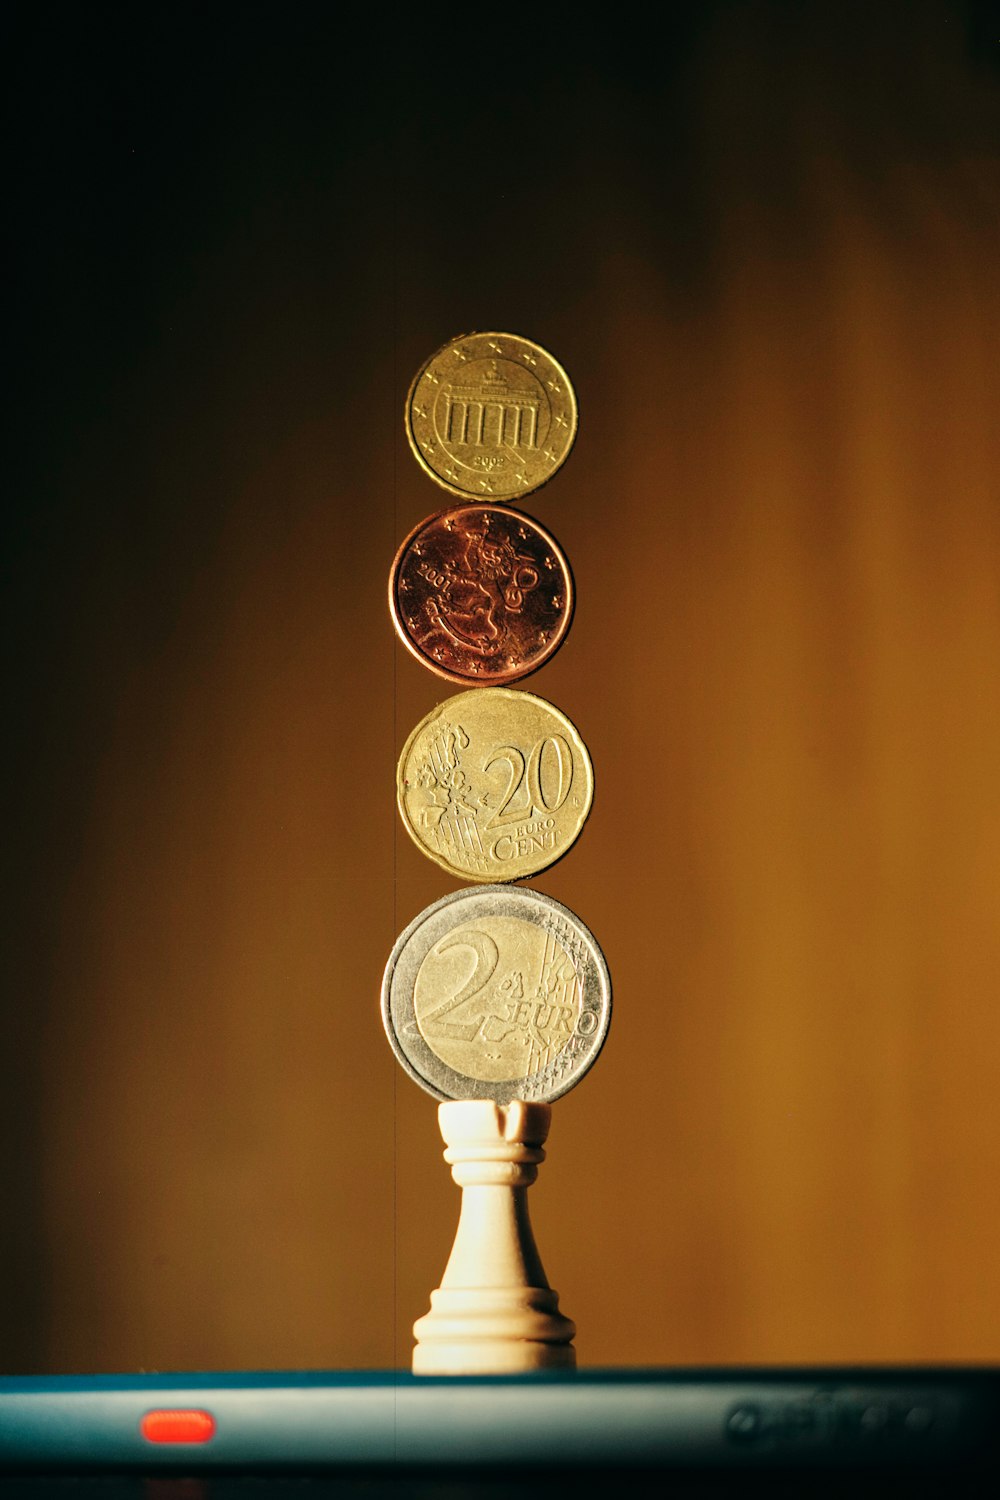 monete rotonde d'oro su superficie di legno marrone